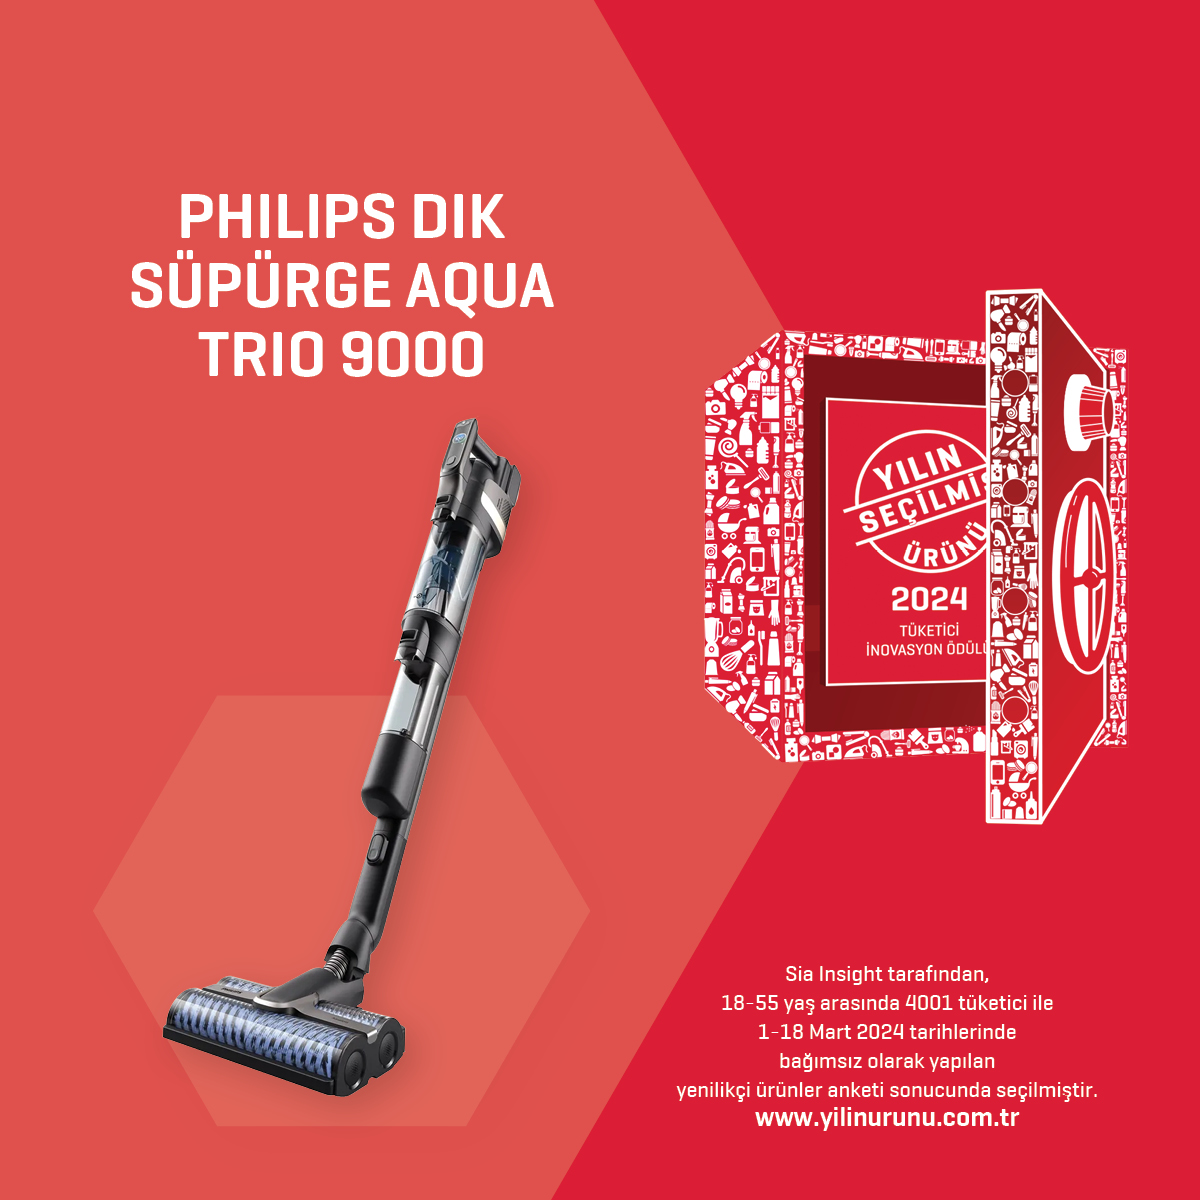 PhilipsDikSupurgeAquaTrio9000